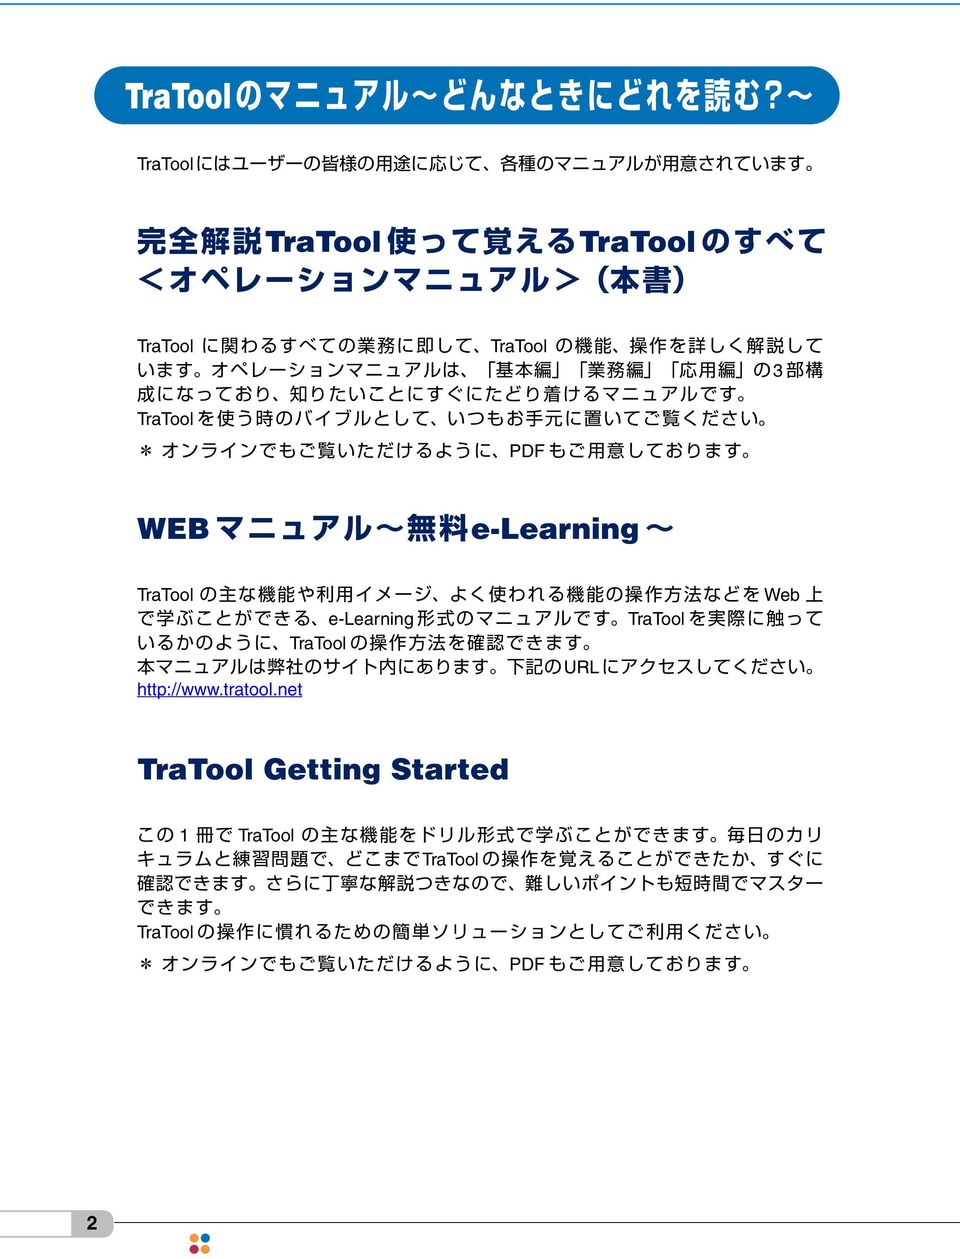 TraTool TraTool URL http://www.tratool.